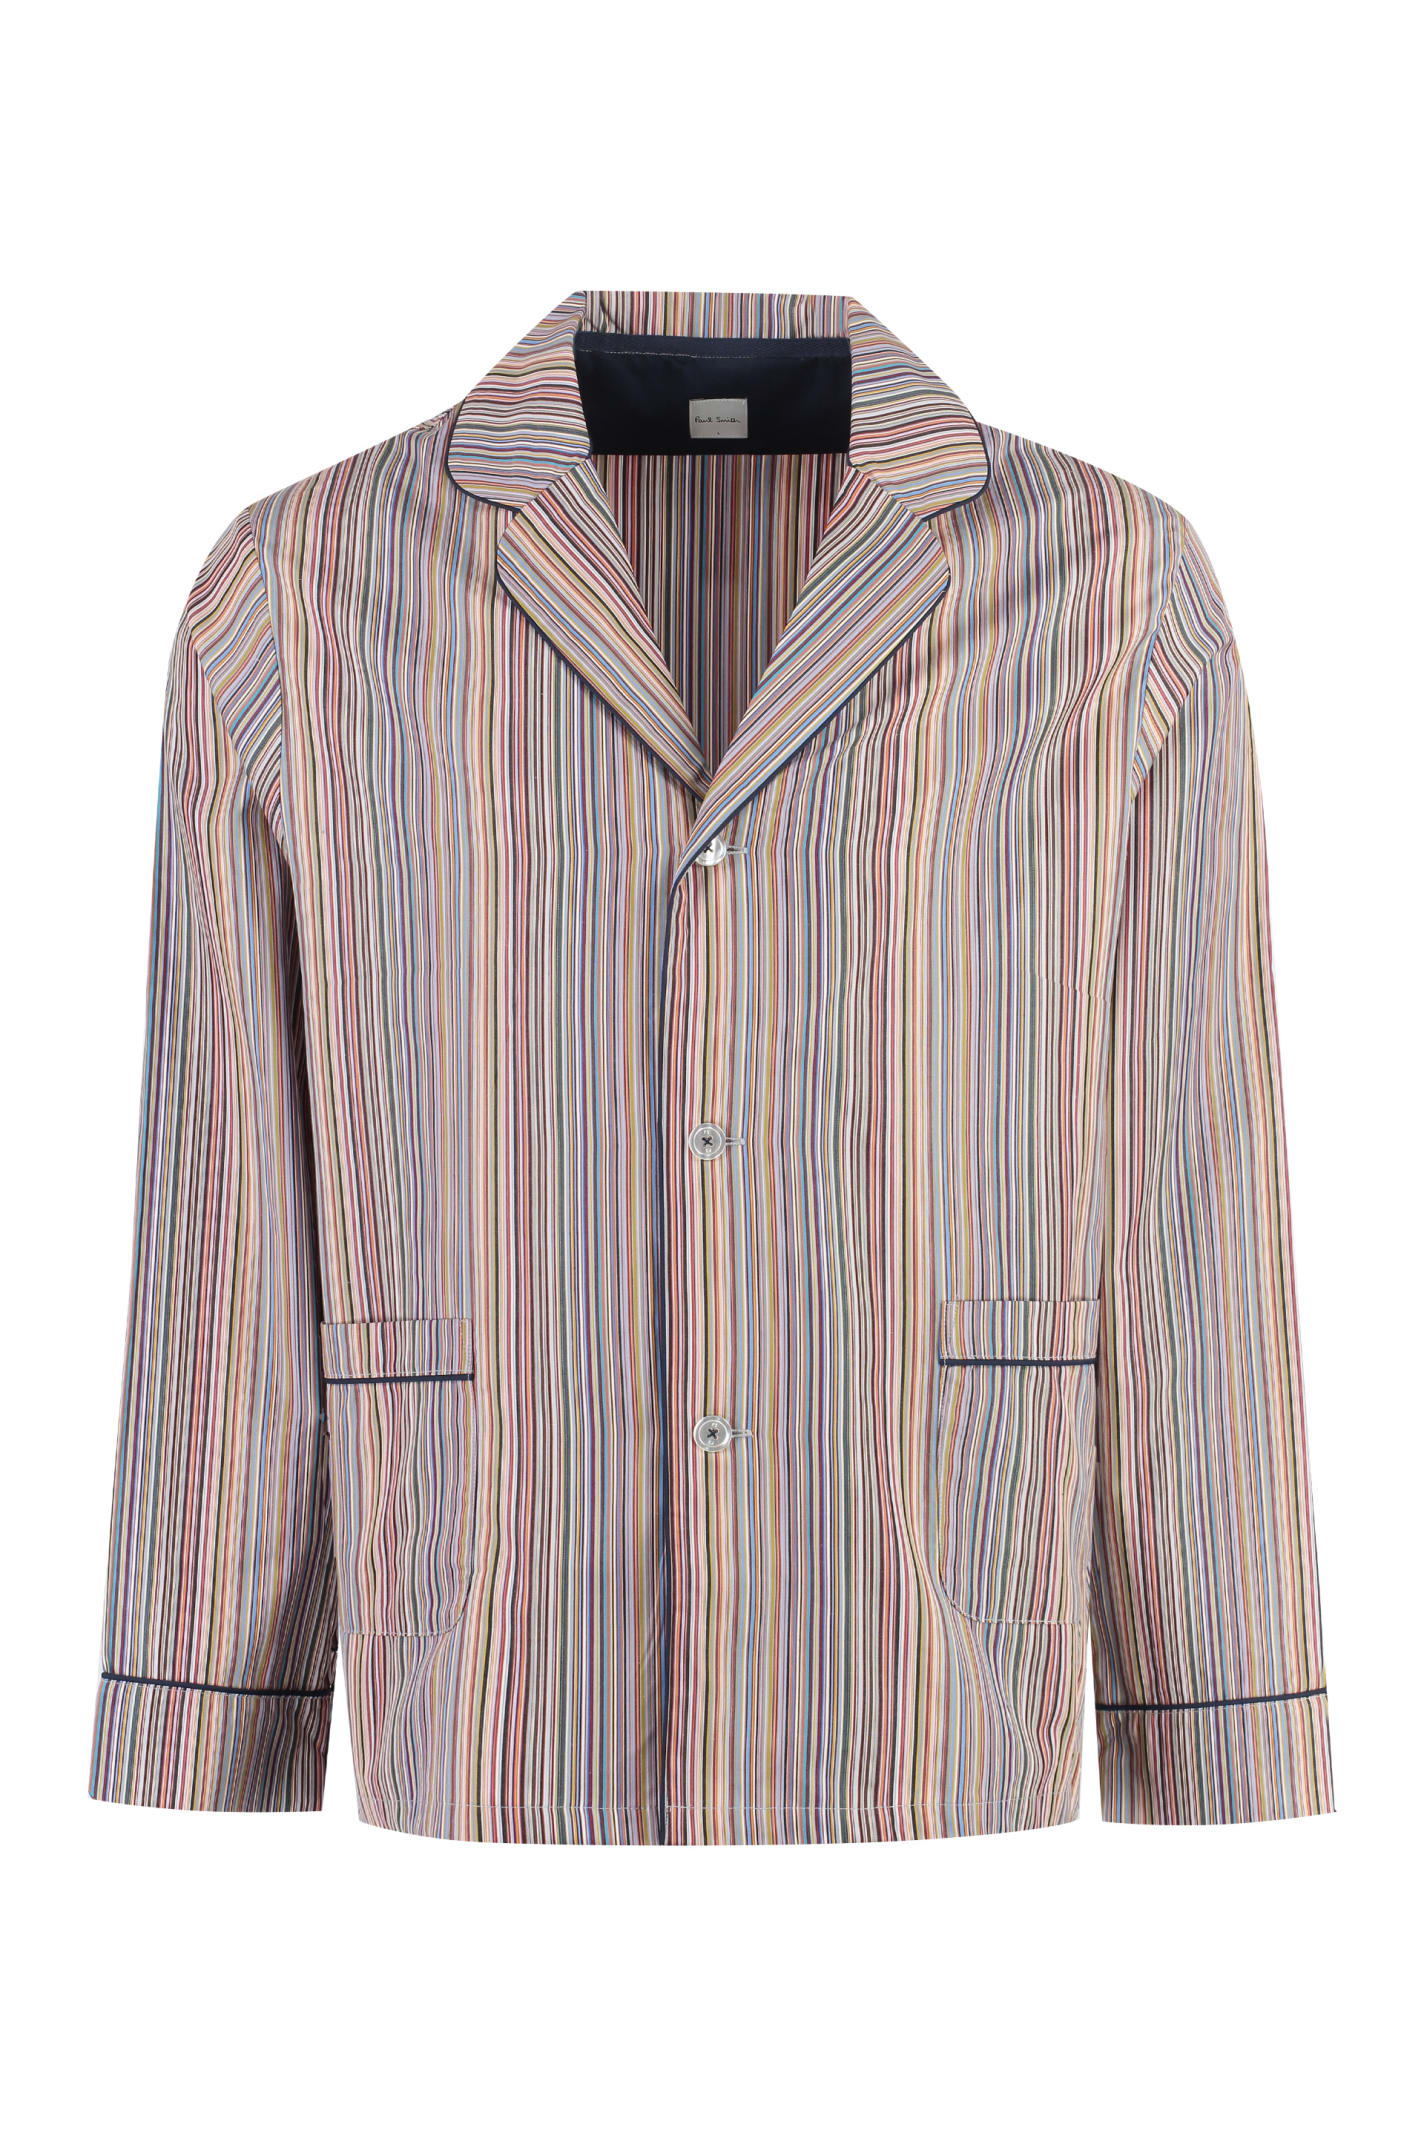 Ps By Paul Smith Striped Cotton Pyjamas Pyjama In Multi Coloured